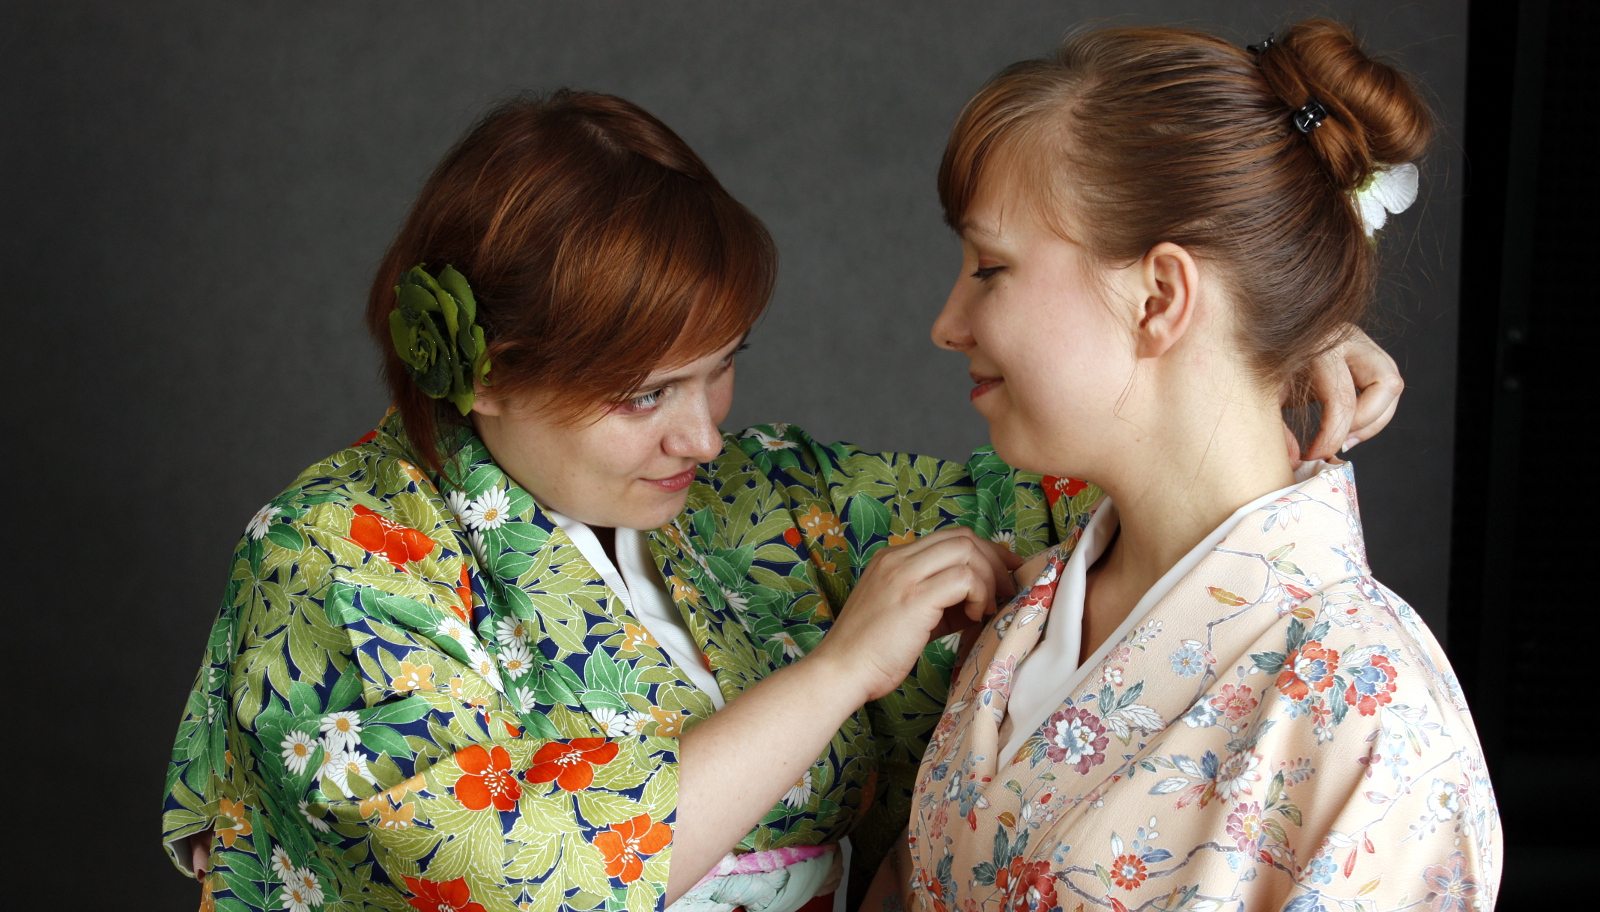 Pasjonaci kultury japońskiej: Olga Mazurkiewicz z Yorokobi no koen (kimono i kitsuke)